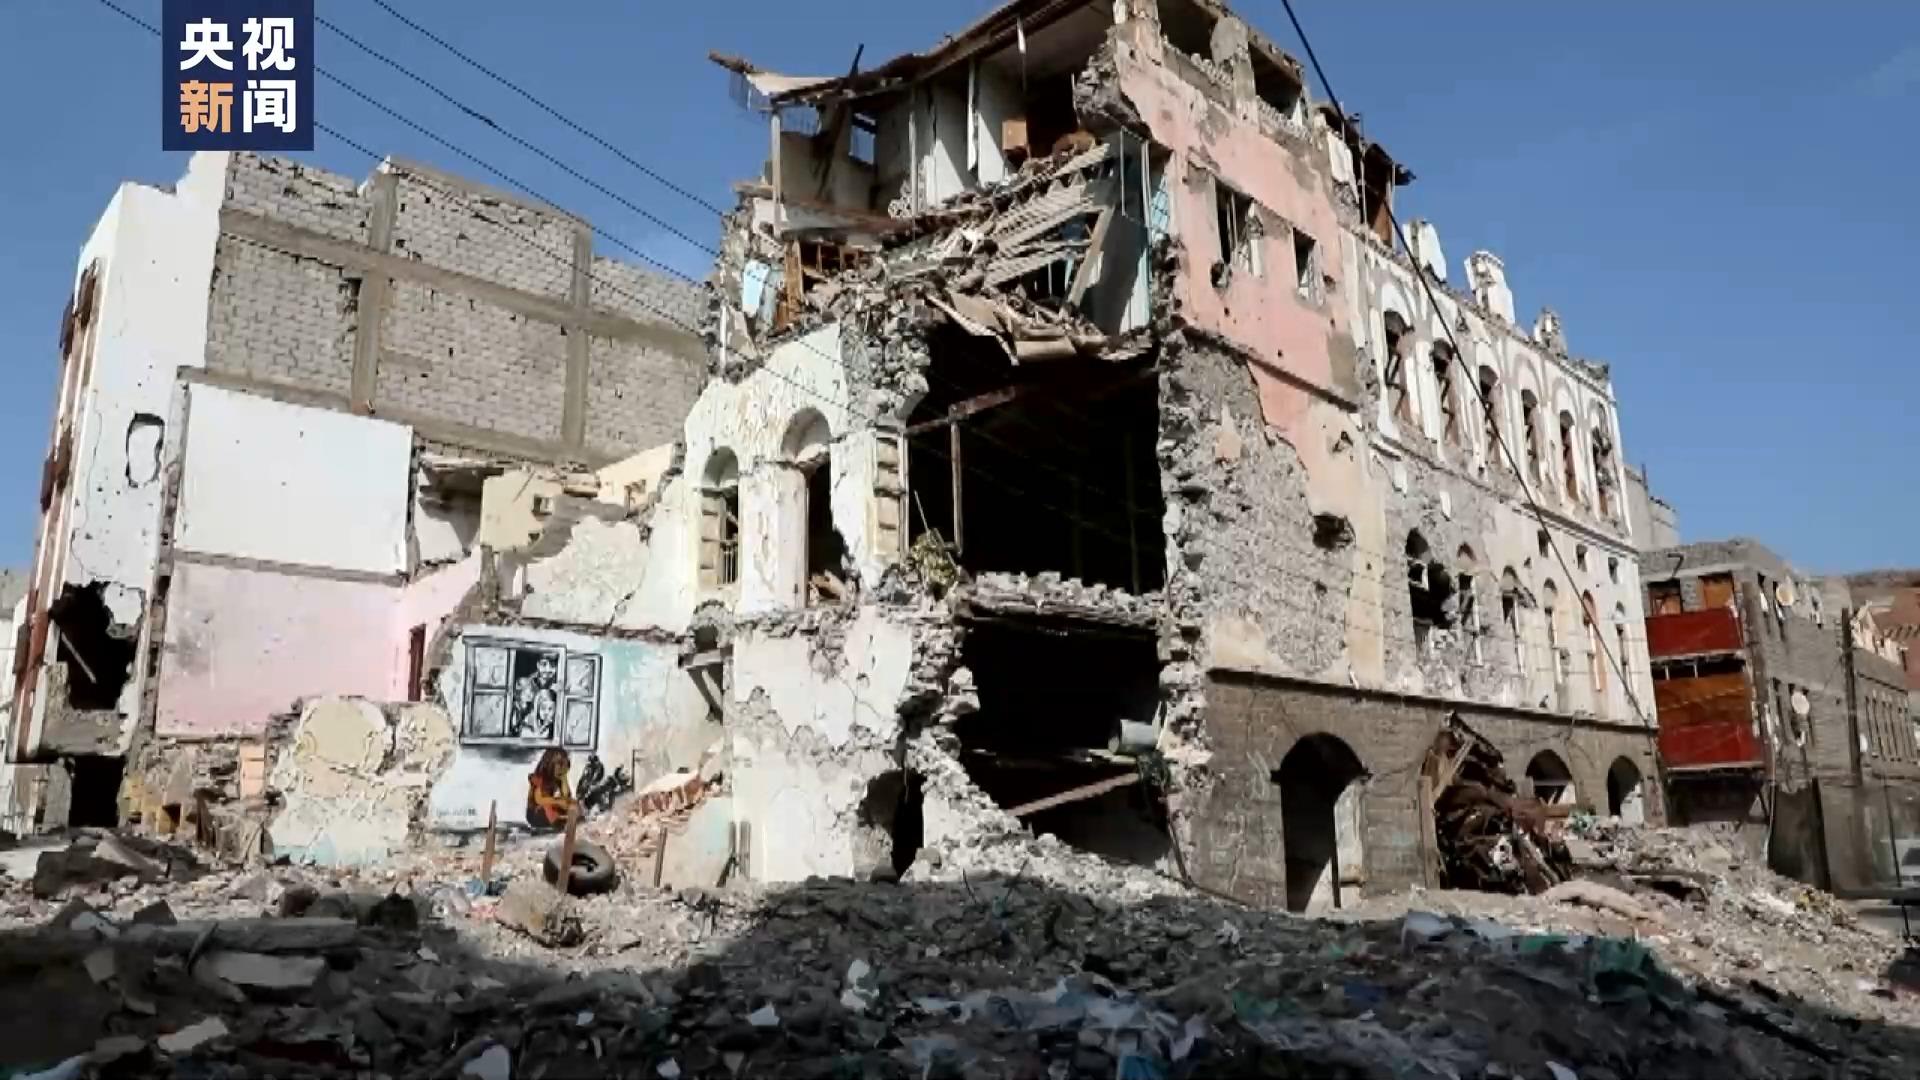 也门战争遗留物散落各处 地雷难清给民众带来极大危害